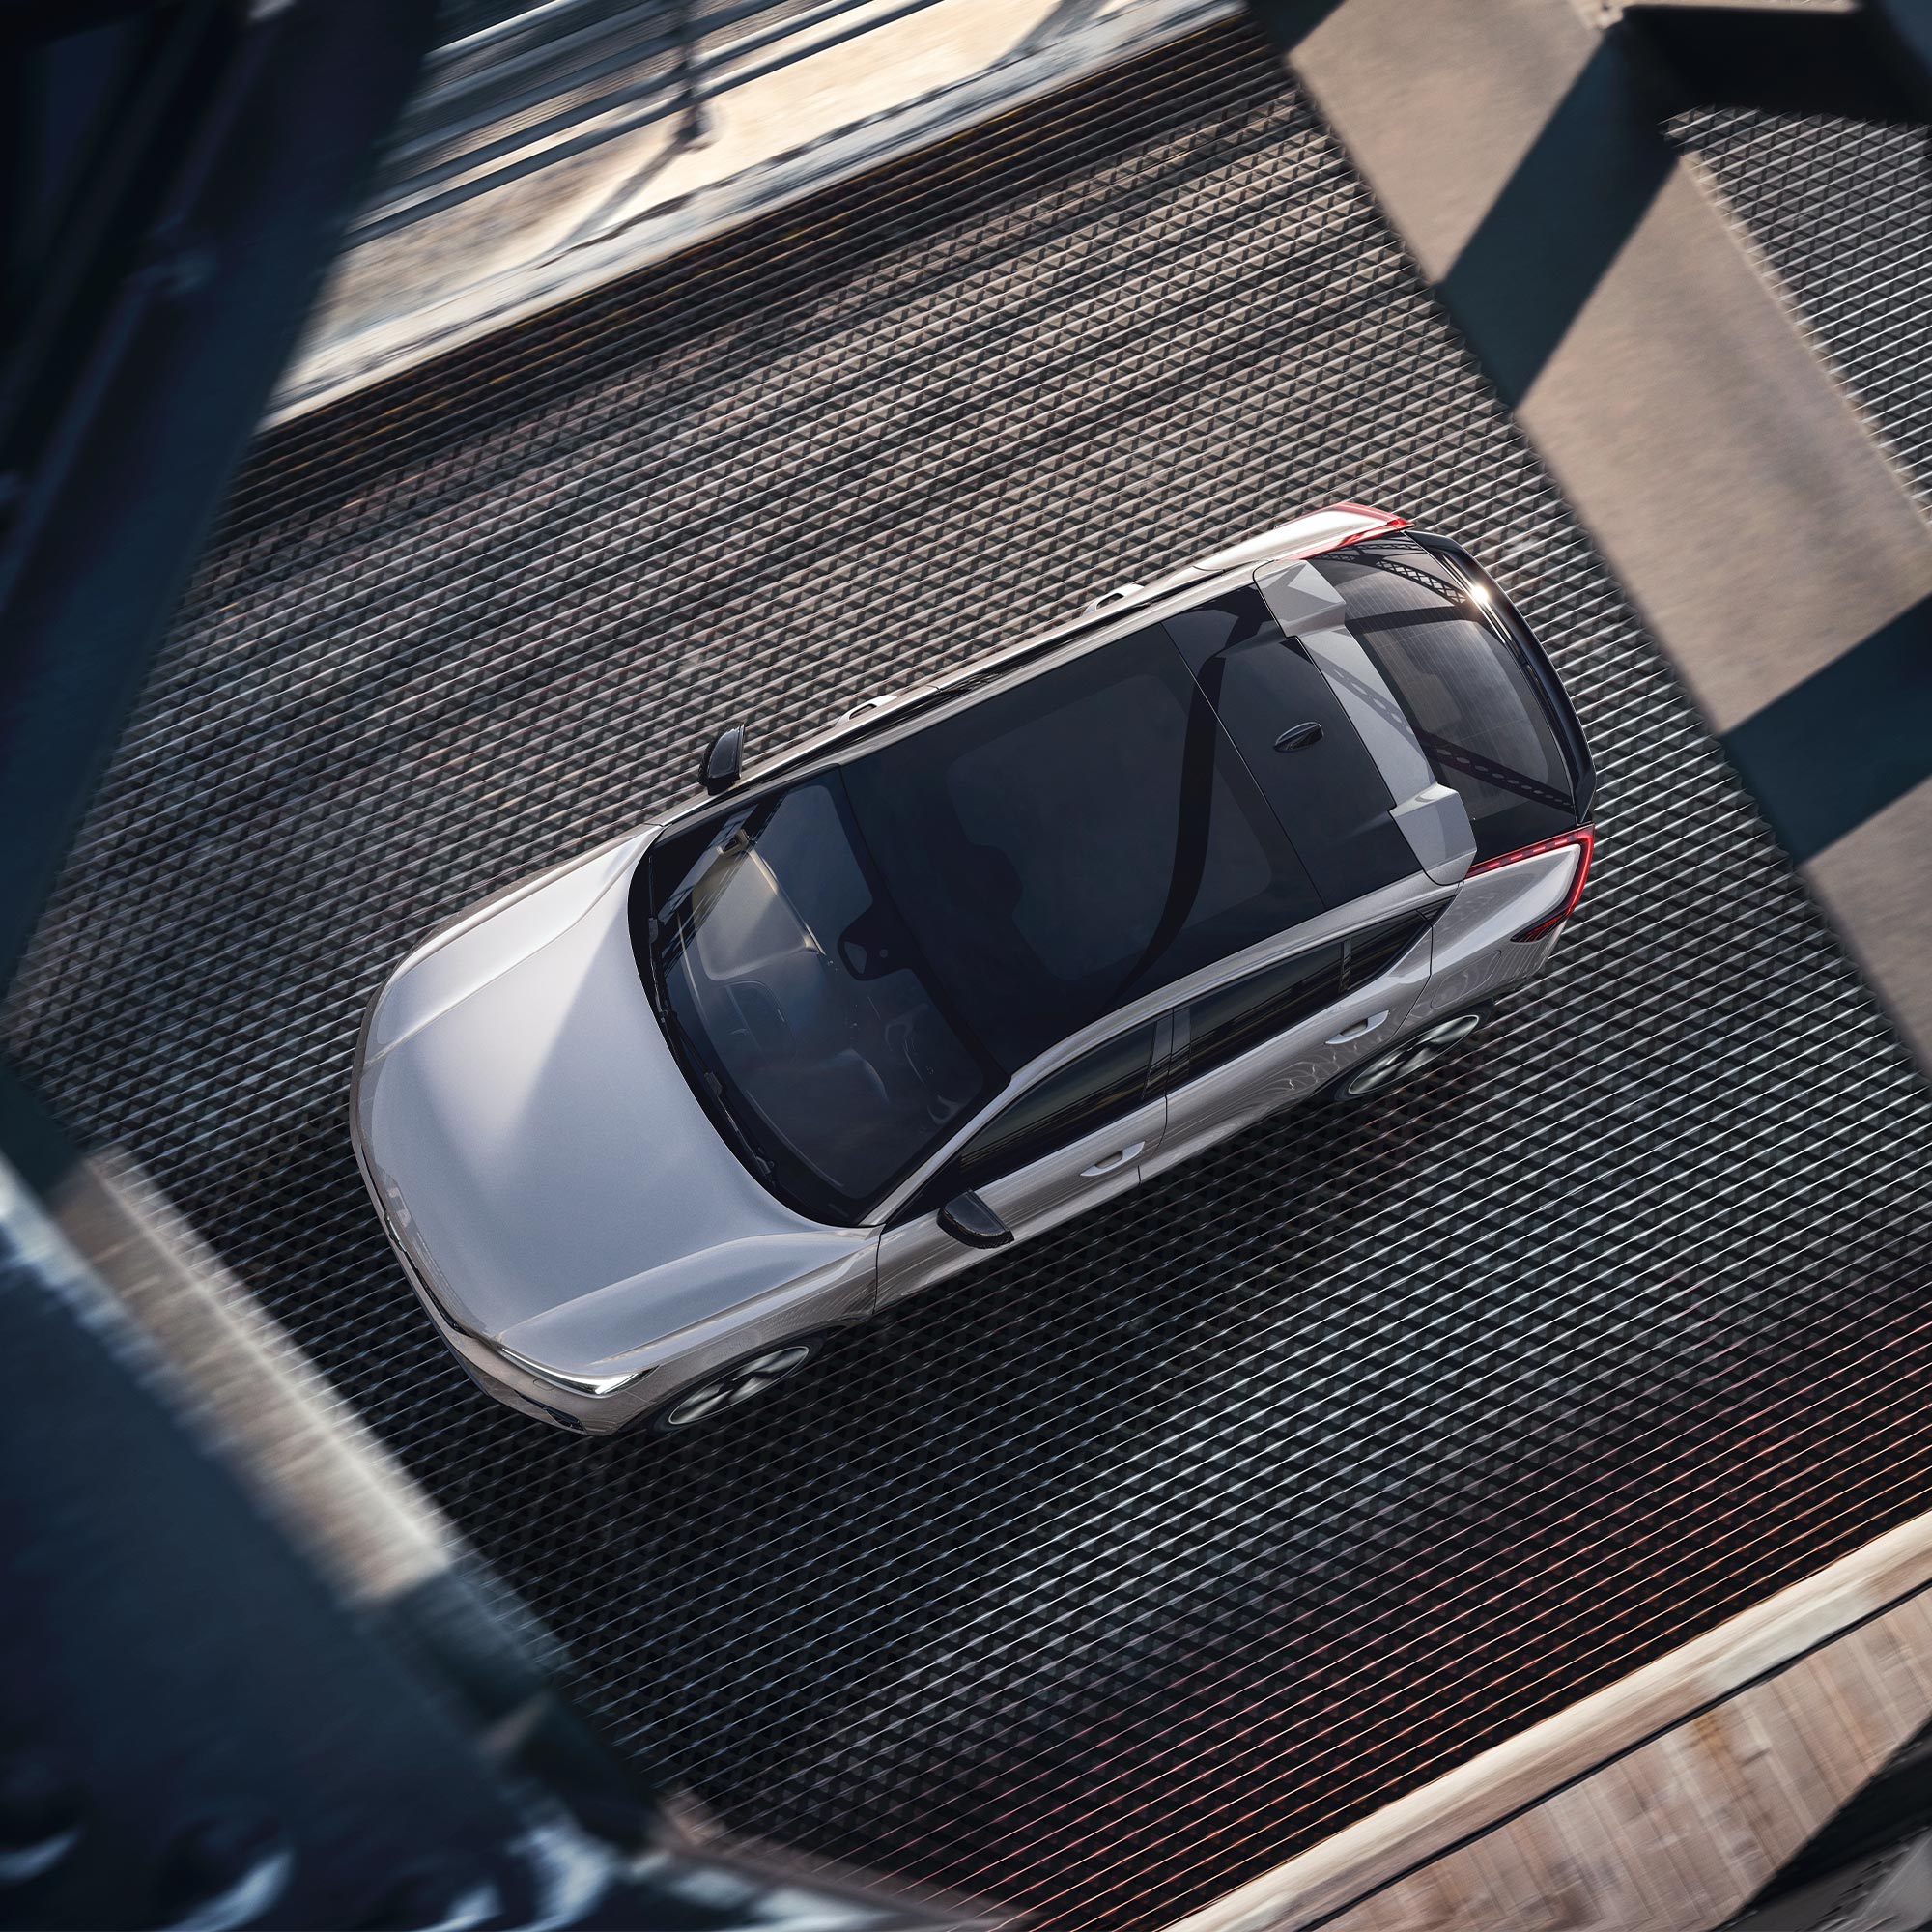 Panoramski krov modela Volvo C40 Recharge gledan odozgo.